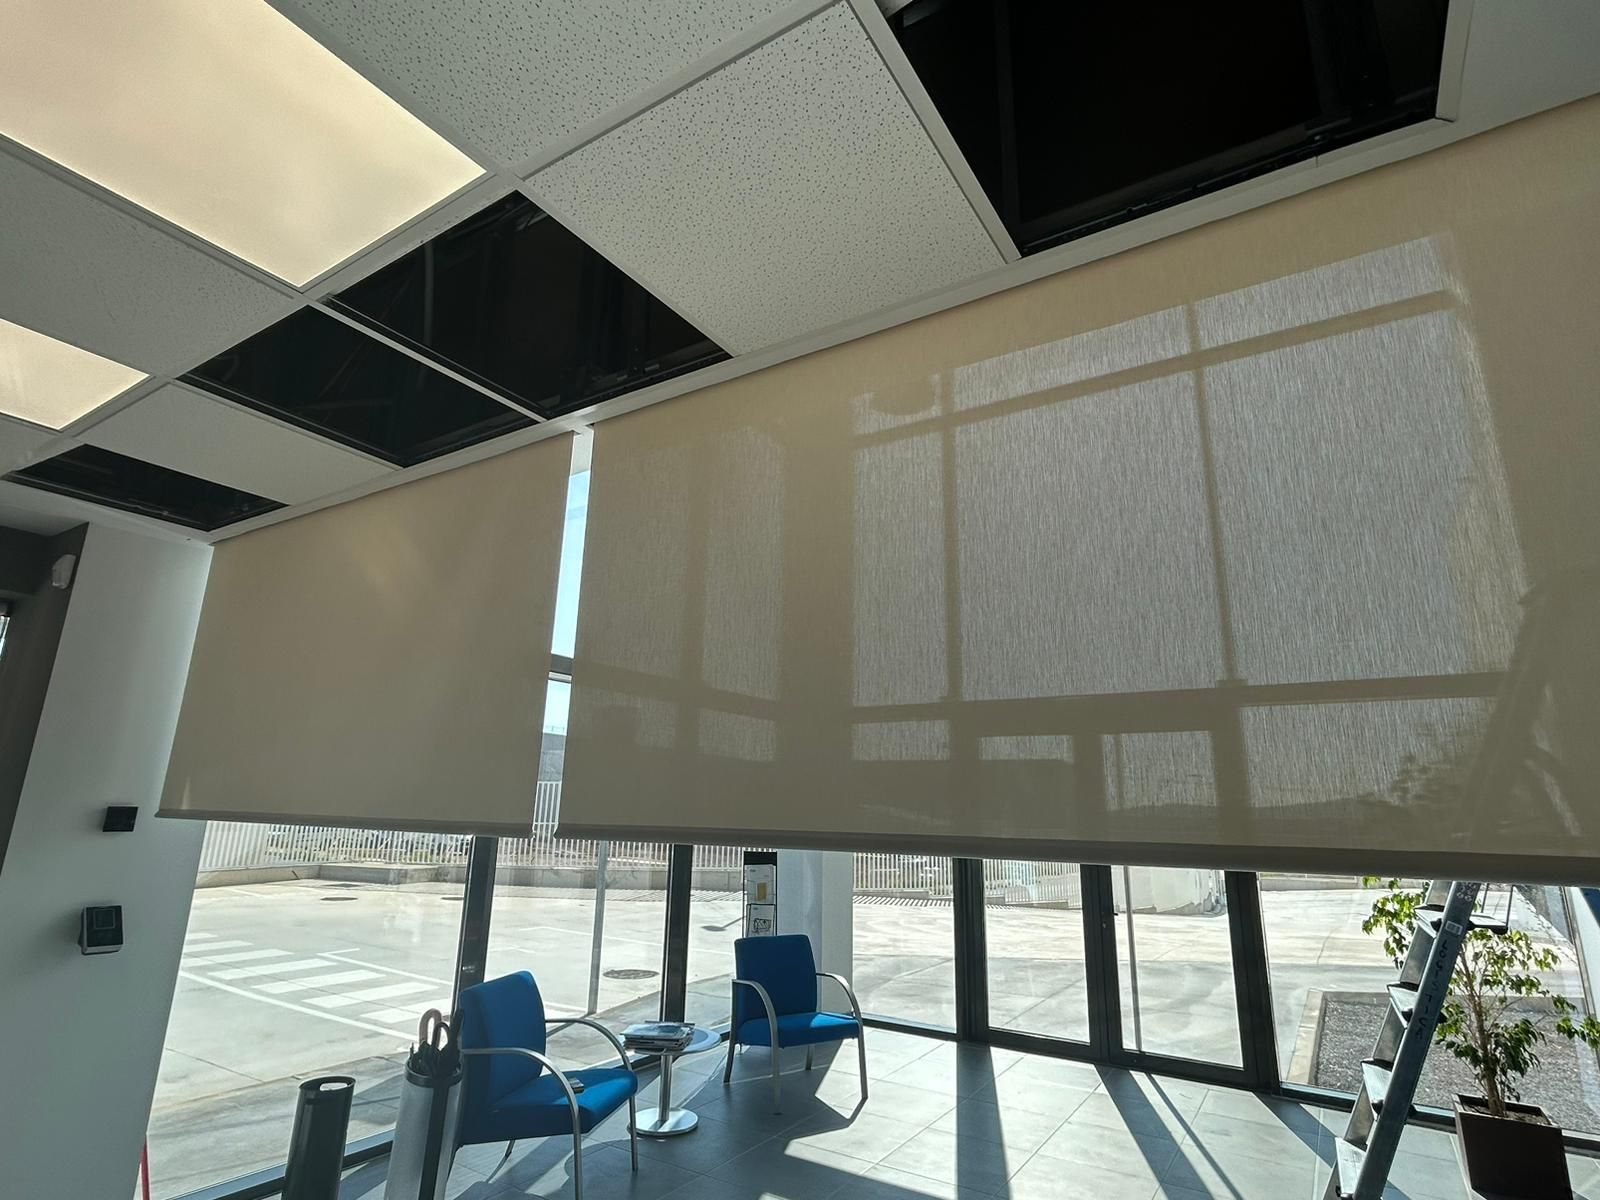 Instalación de cortinas enrollables con tejido técnico screen motorizadas, referencia 420P abertura del 1% y color White/Linen, en oficinas de La Bisbal del Penedés